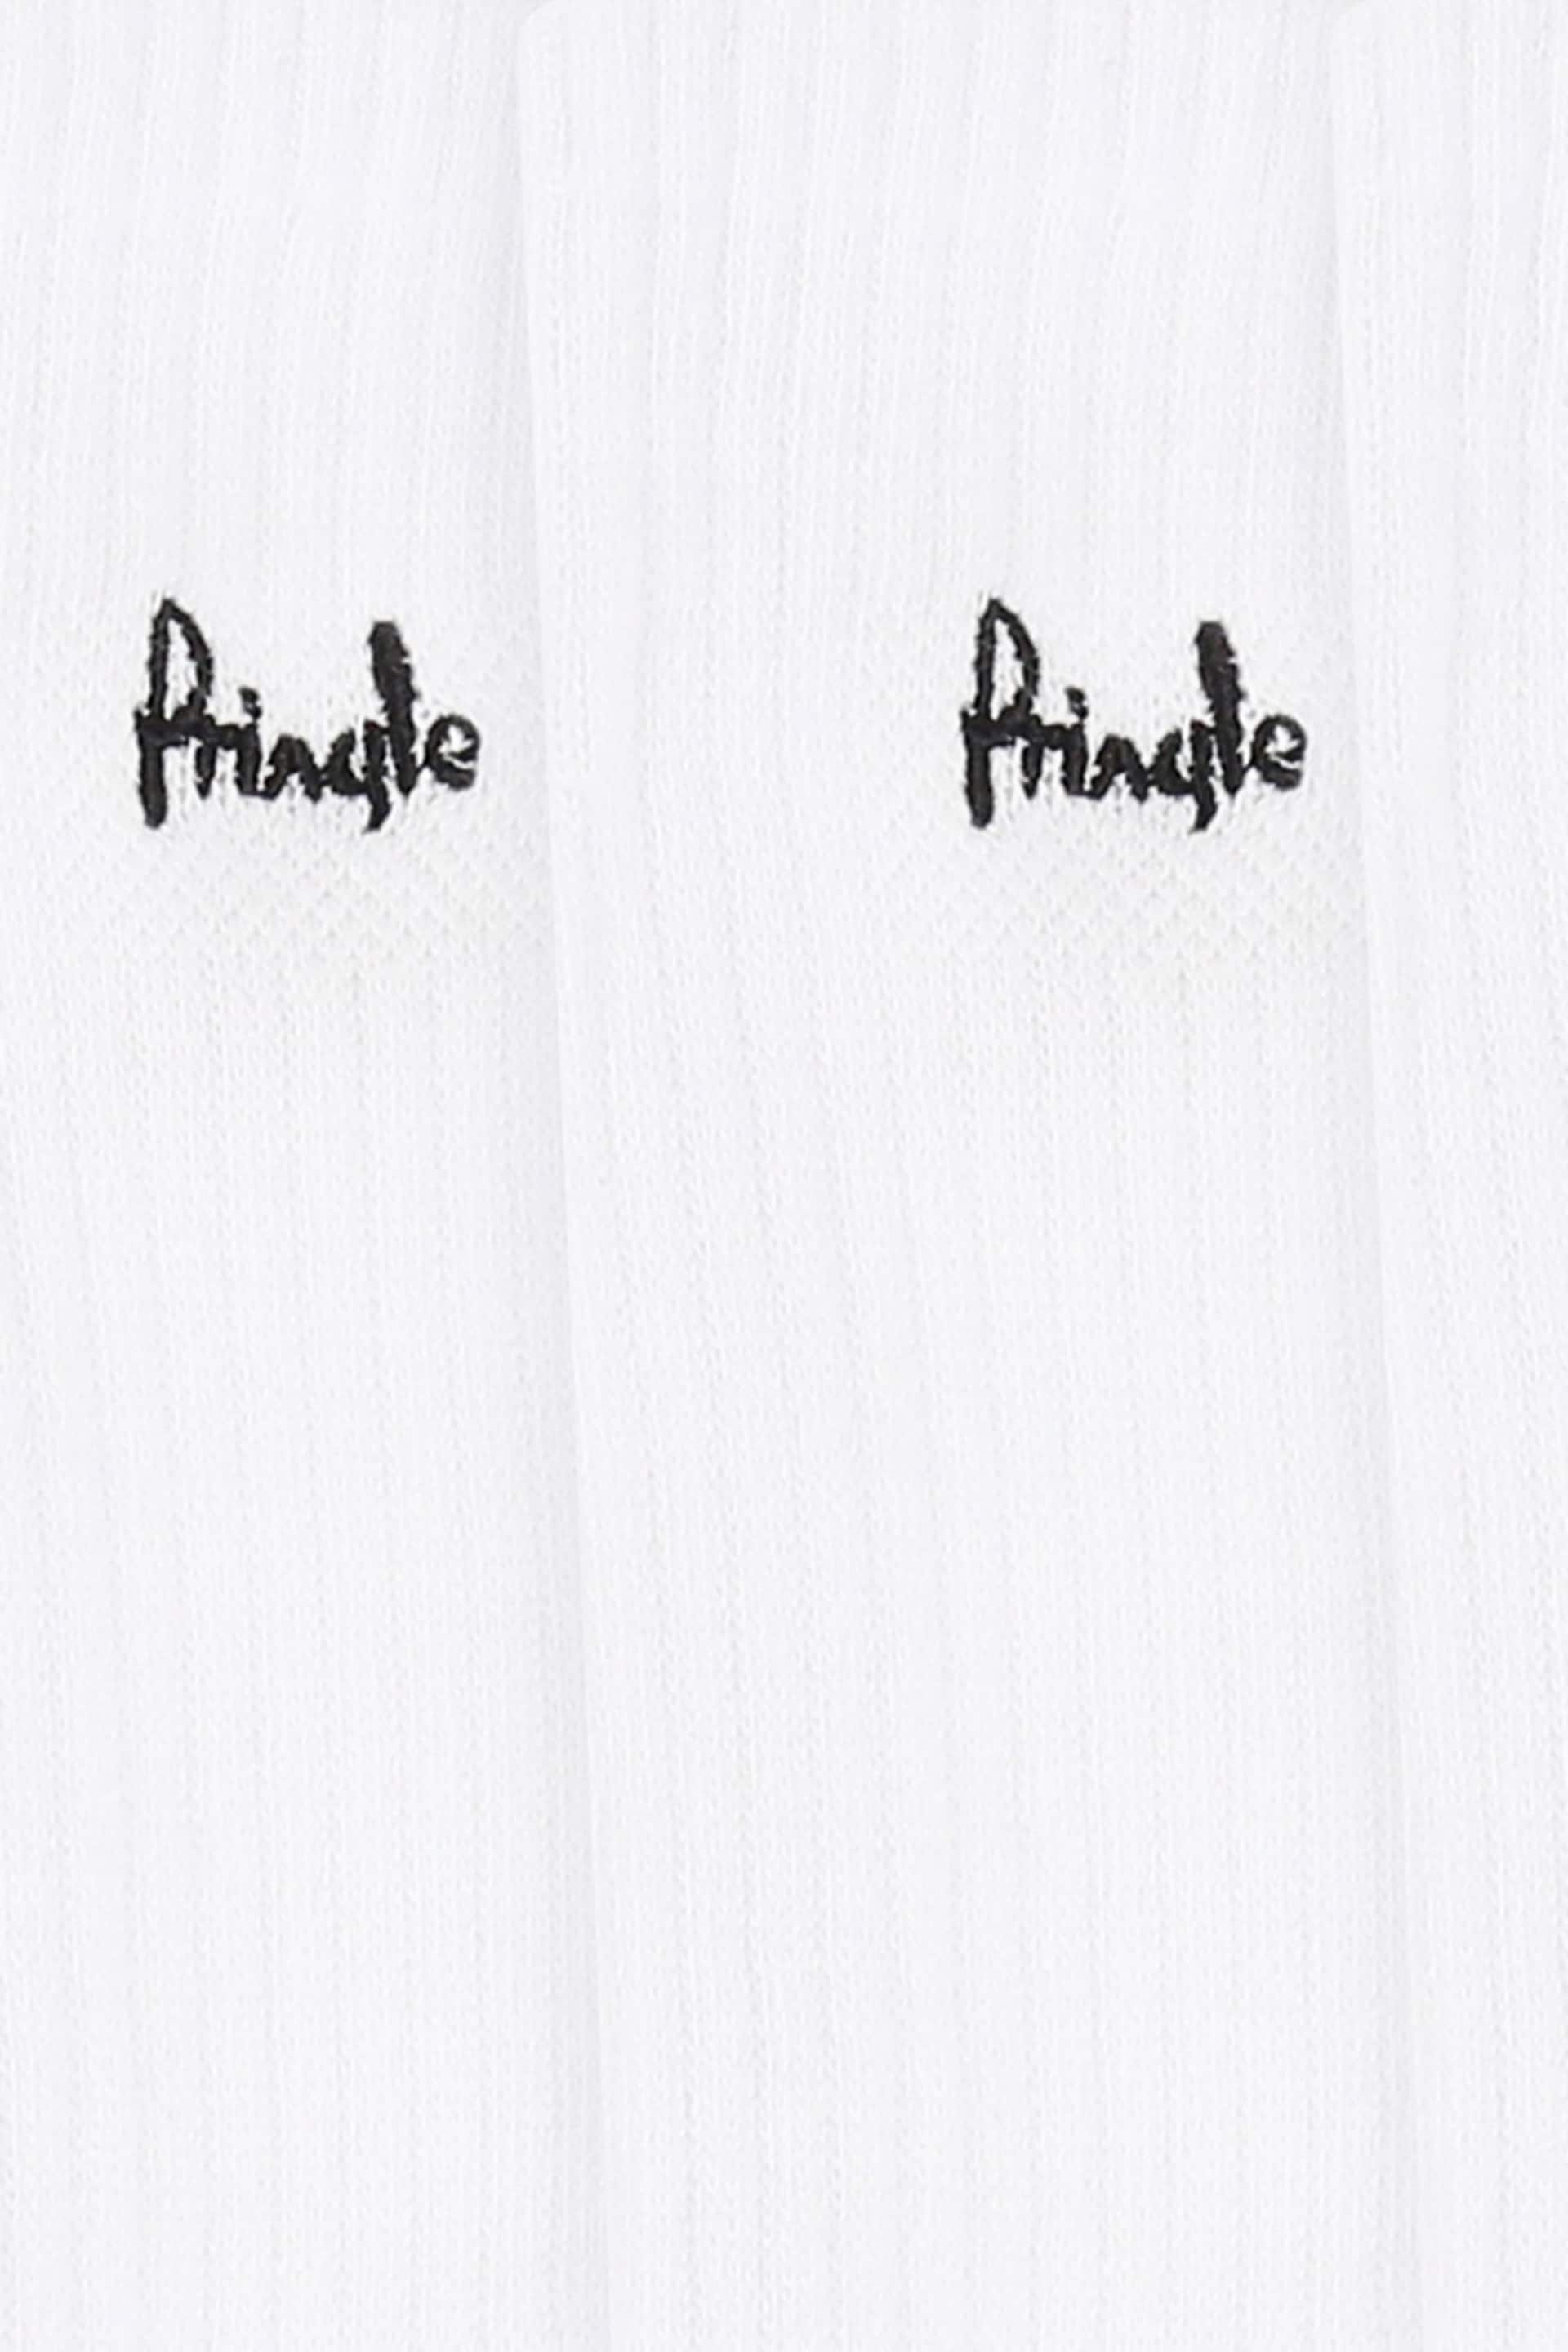 Pringle White Sports Socks - Image 7 of 7